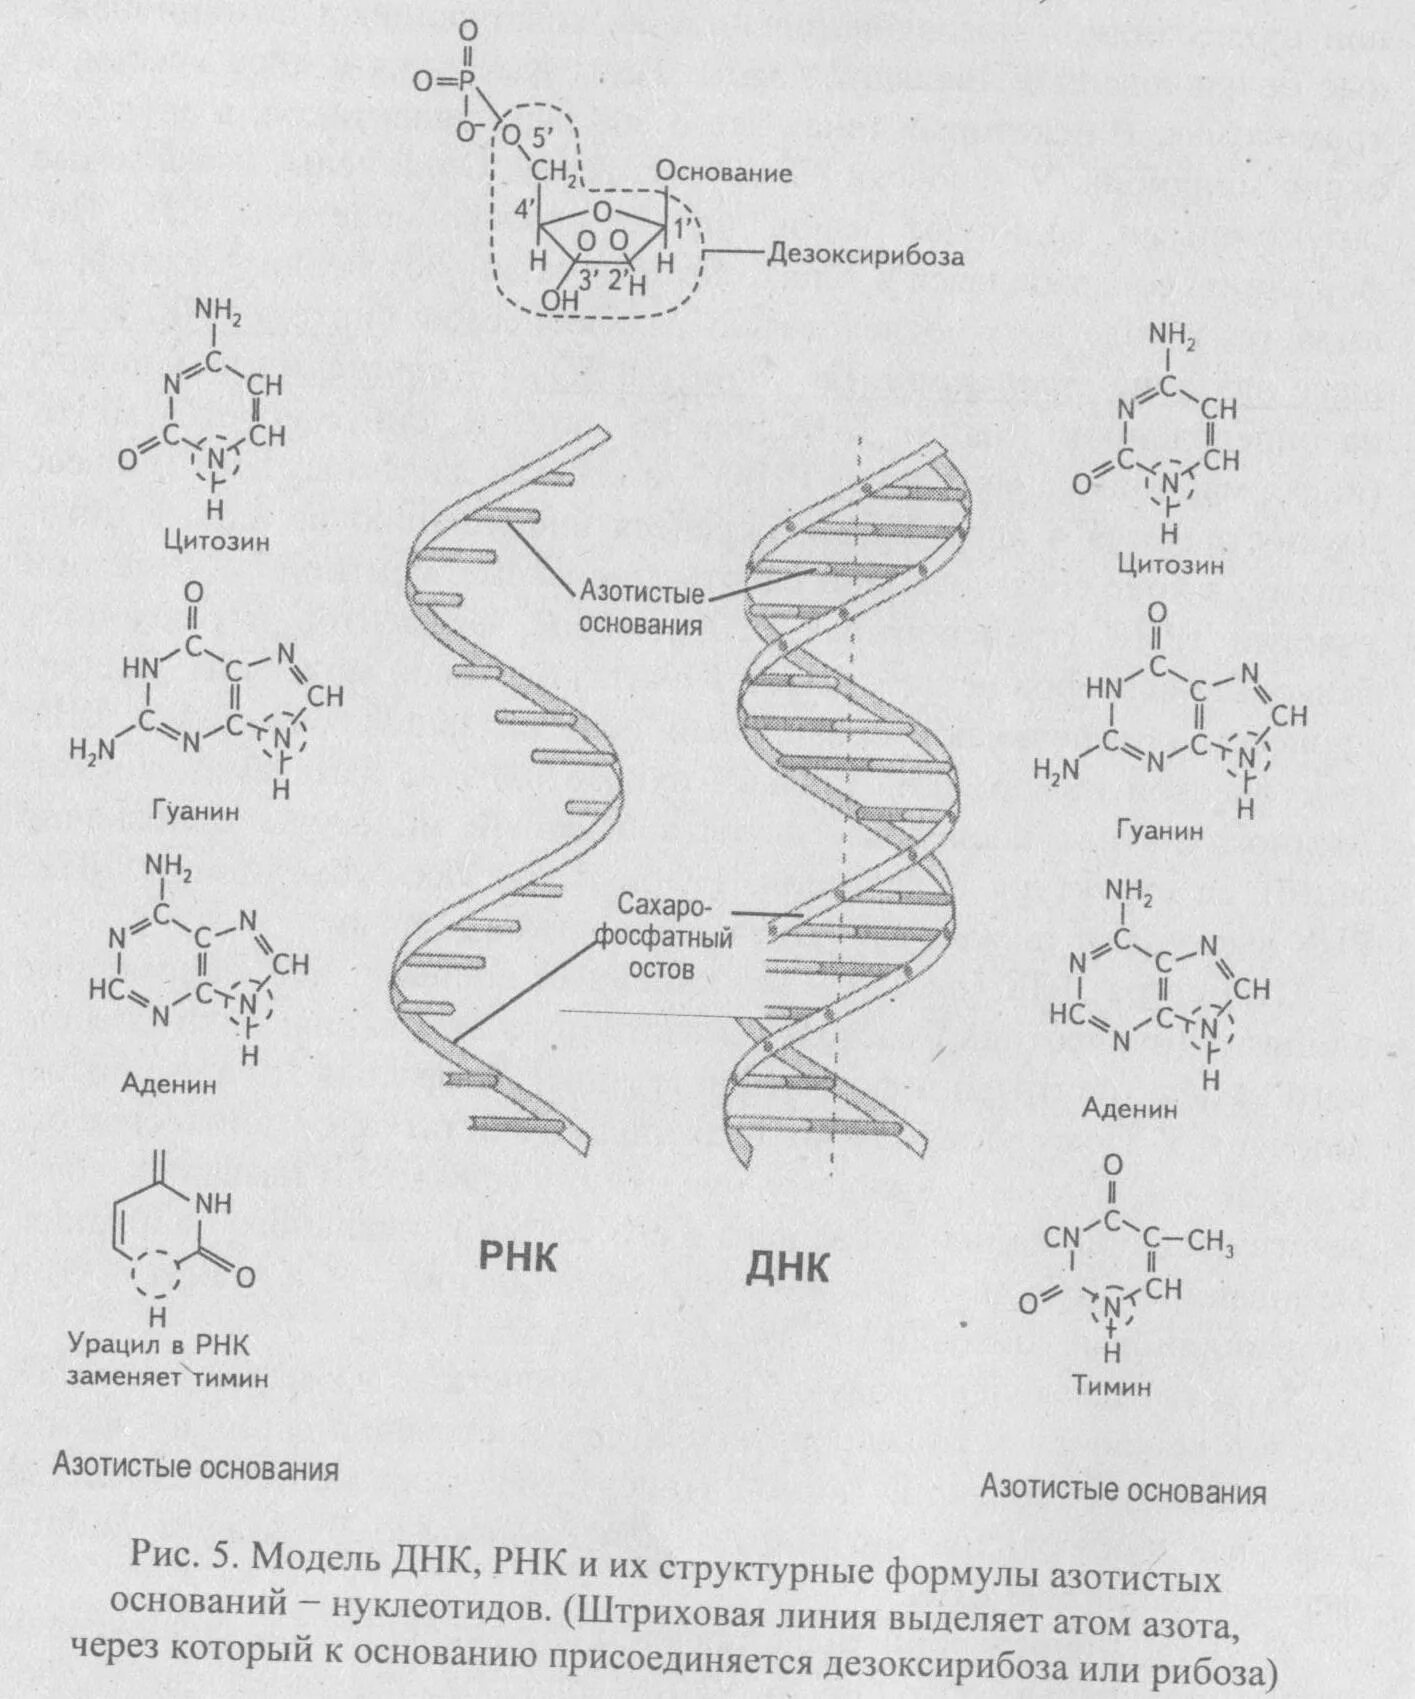 Азотистые основания ДНК И РНК формулы. ДНК РНК урацил. Азотистые основания ДНК И РНК. ДНК РНК аденин Тимин гуанин цитозин.